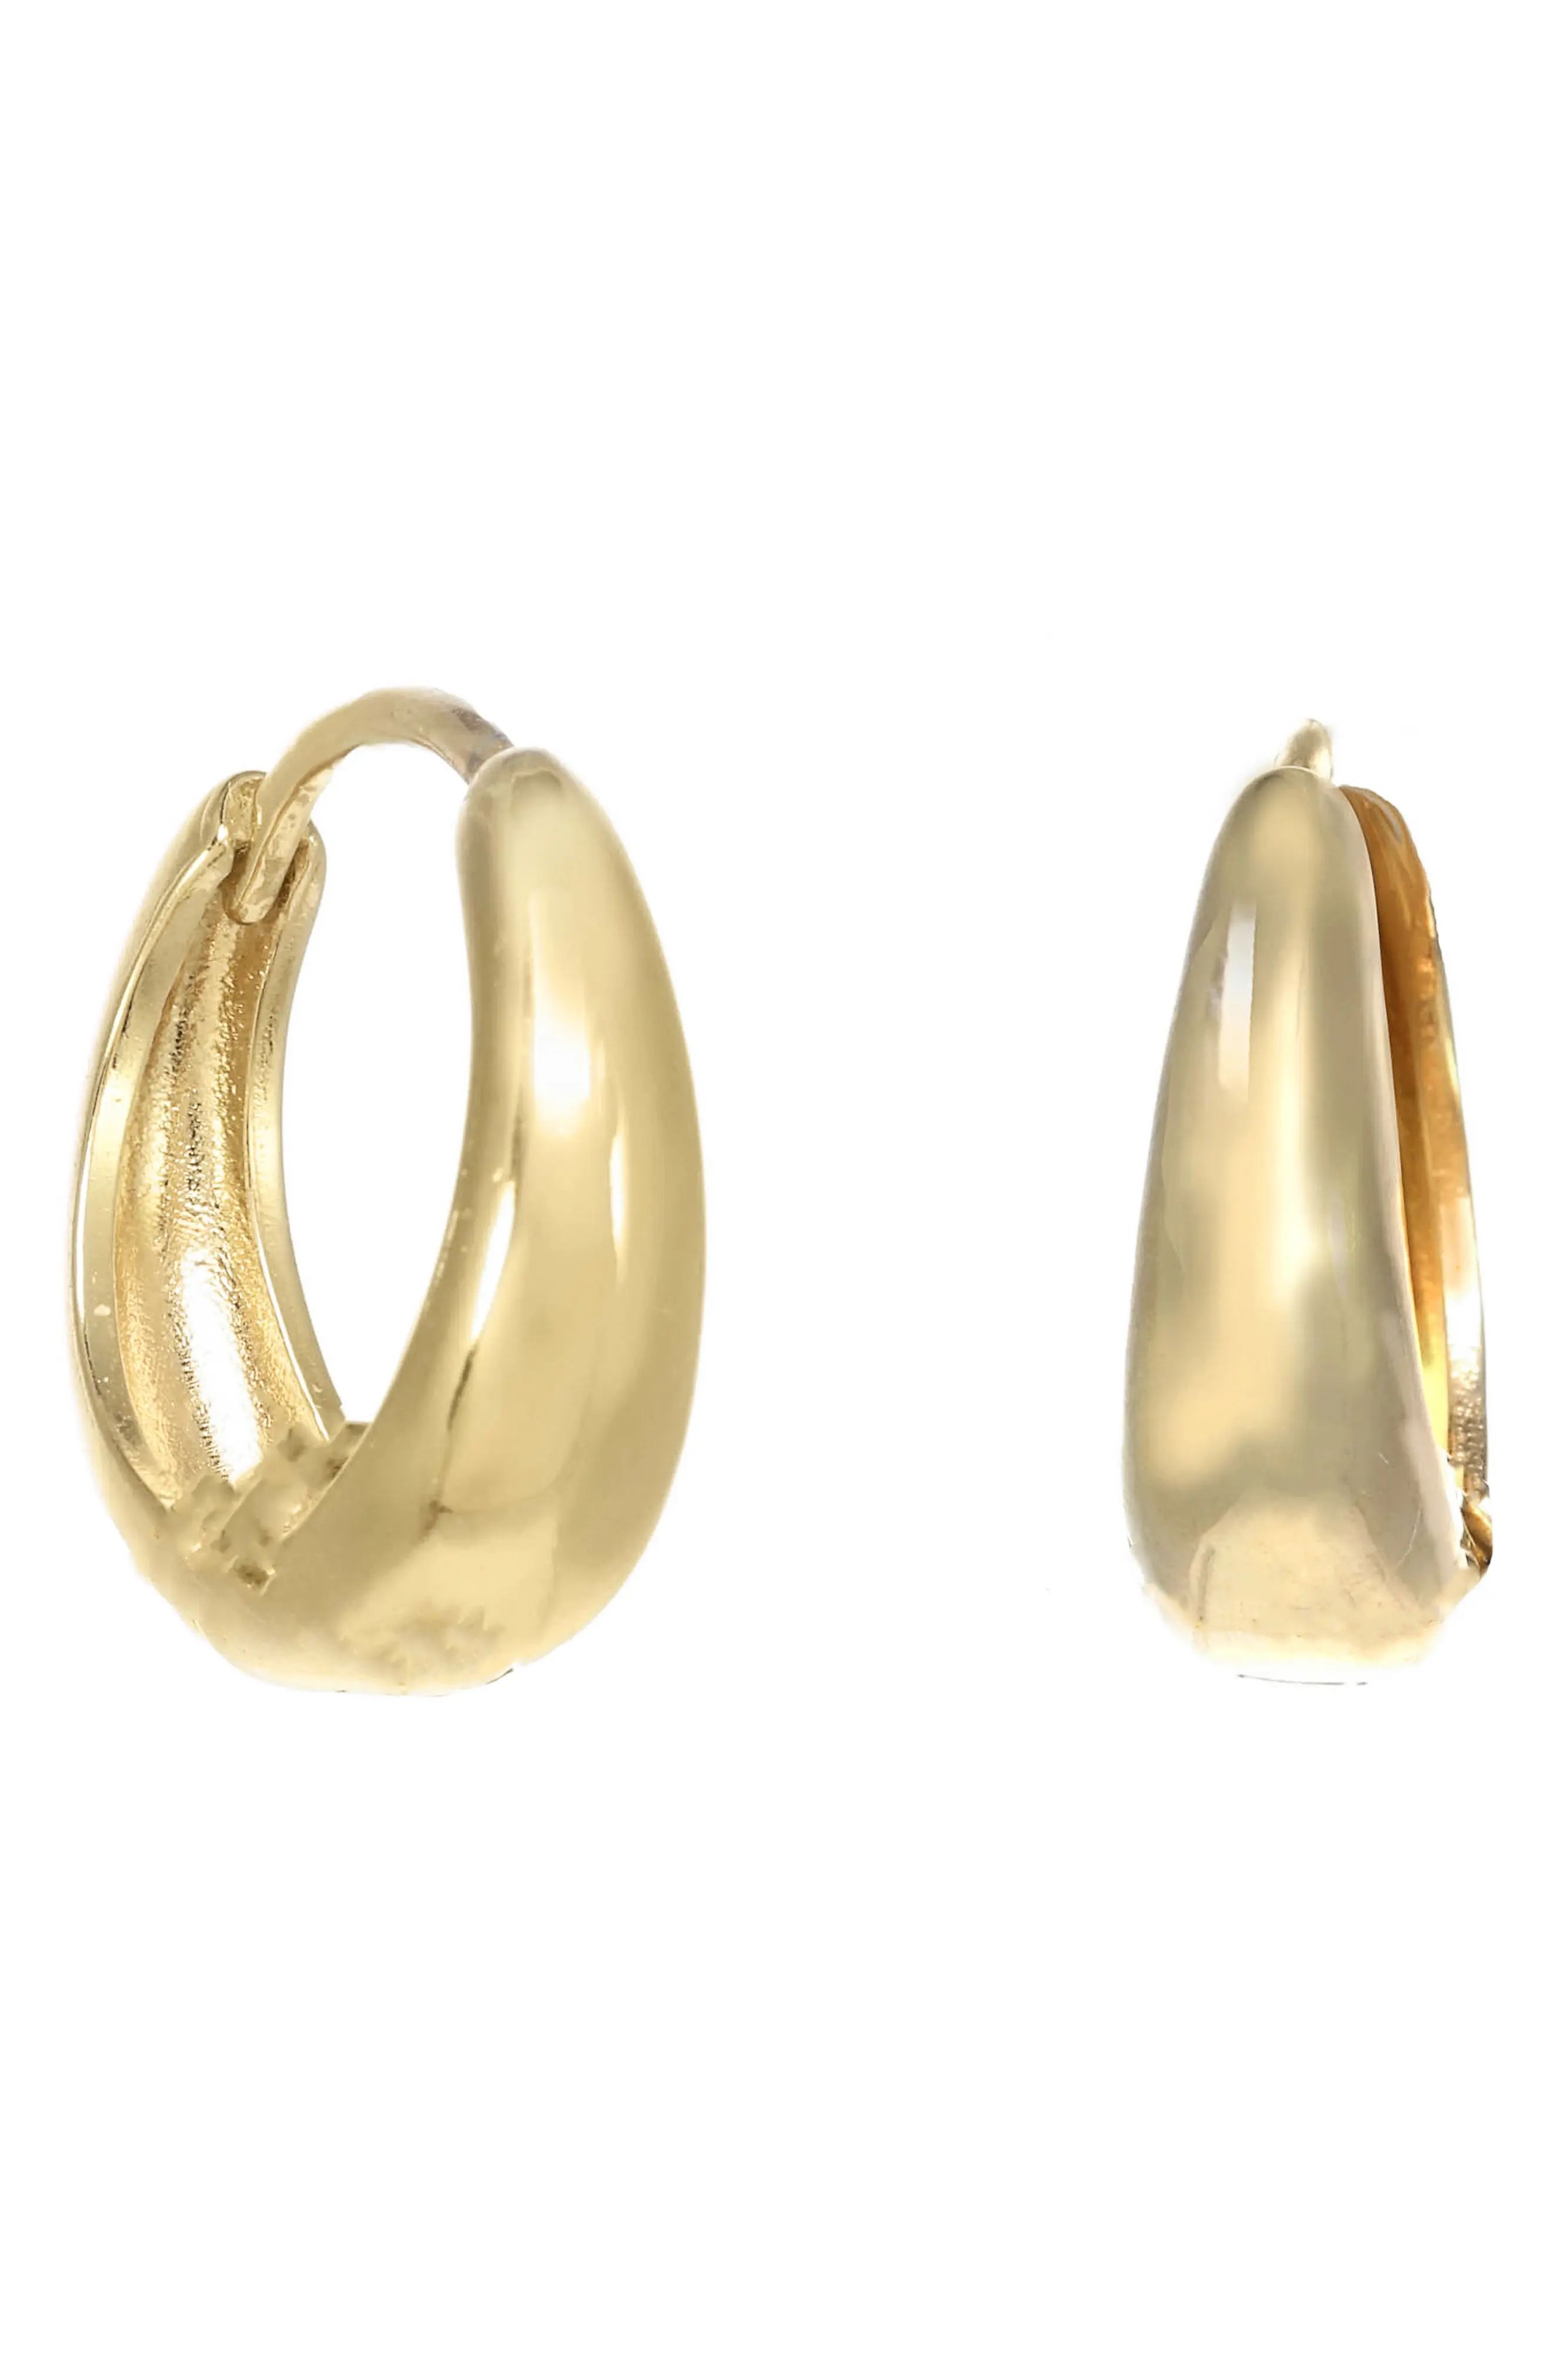 KOZAKH Mavis Hoop Earrings in Gold at Nordstrom | Nordstrom